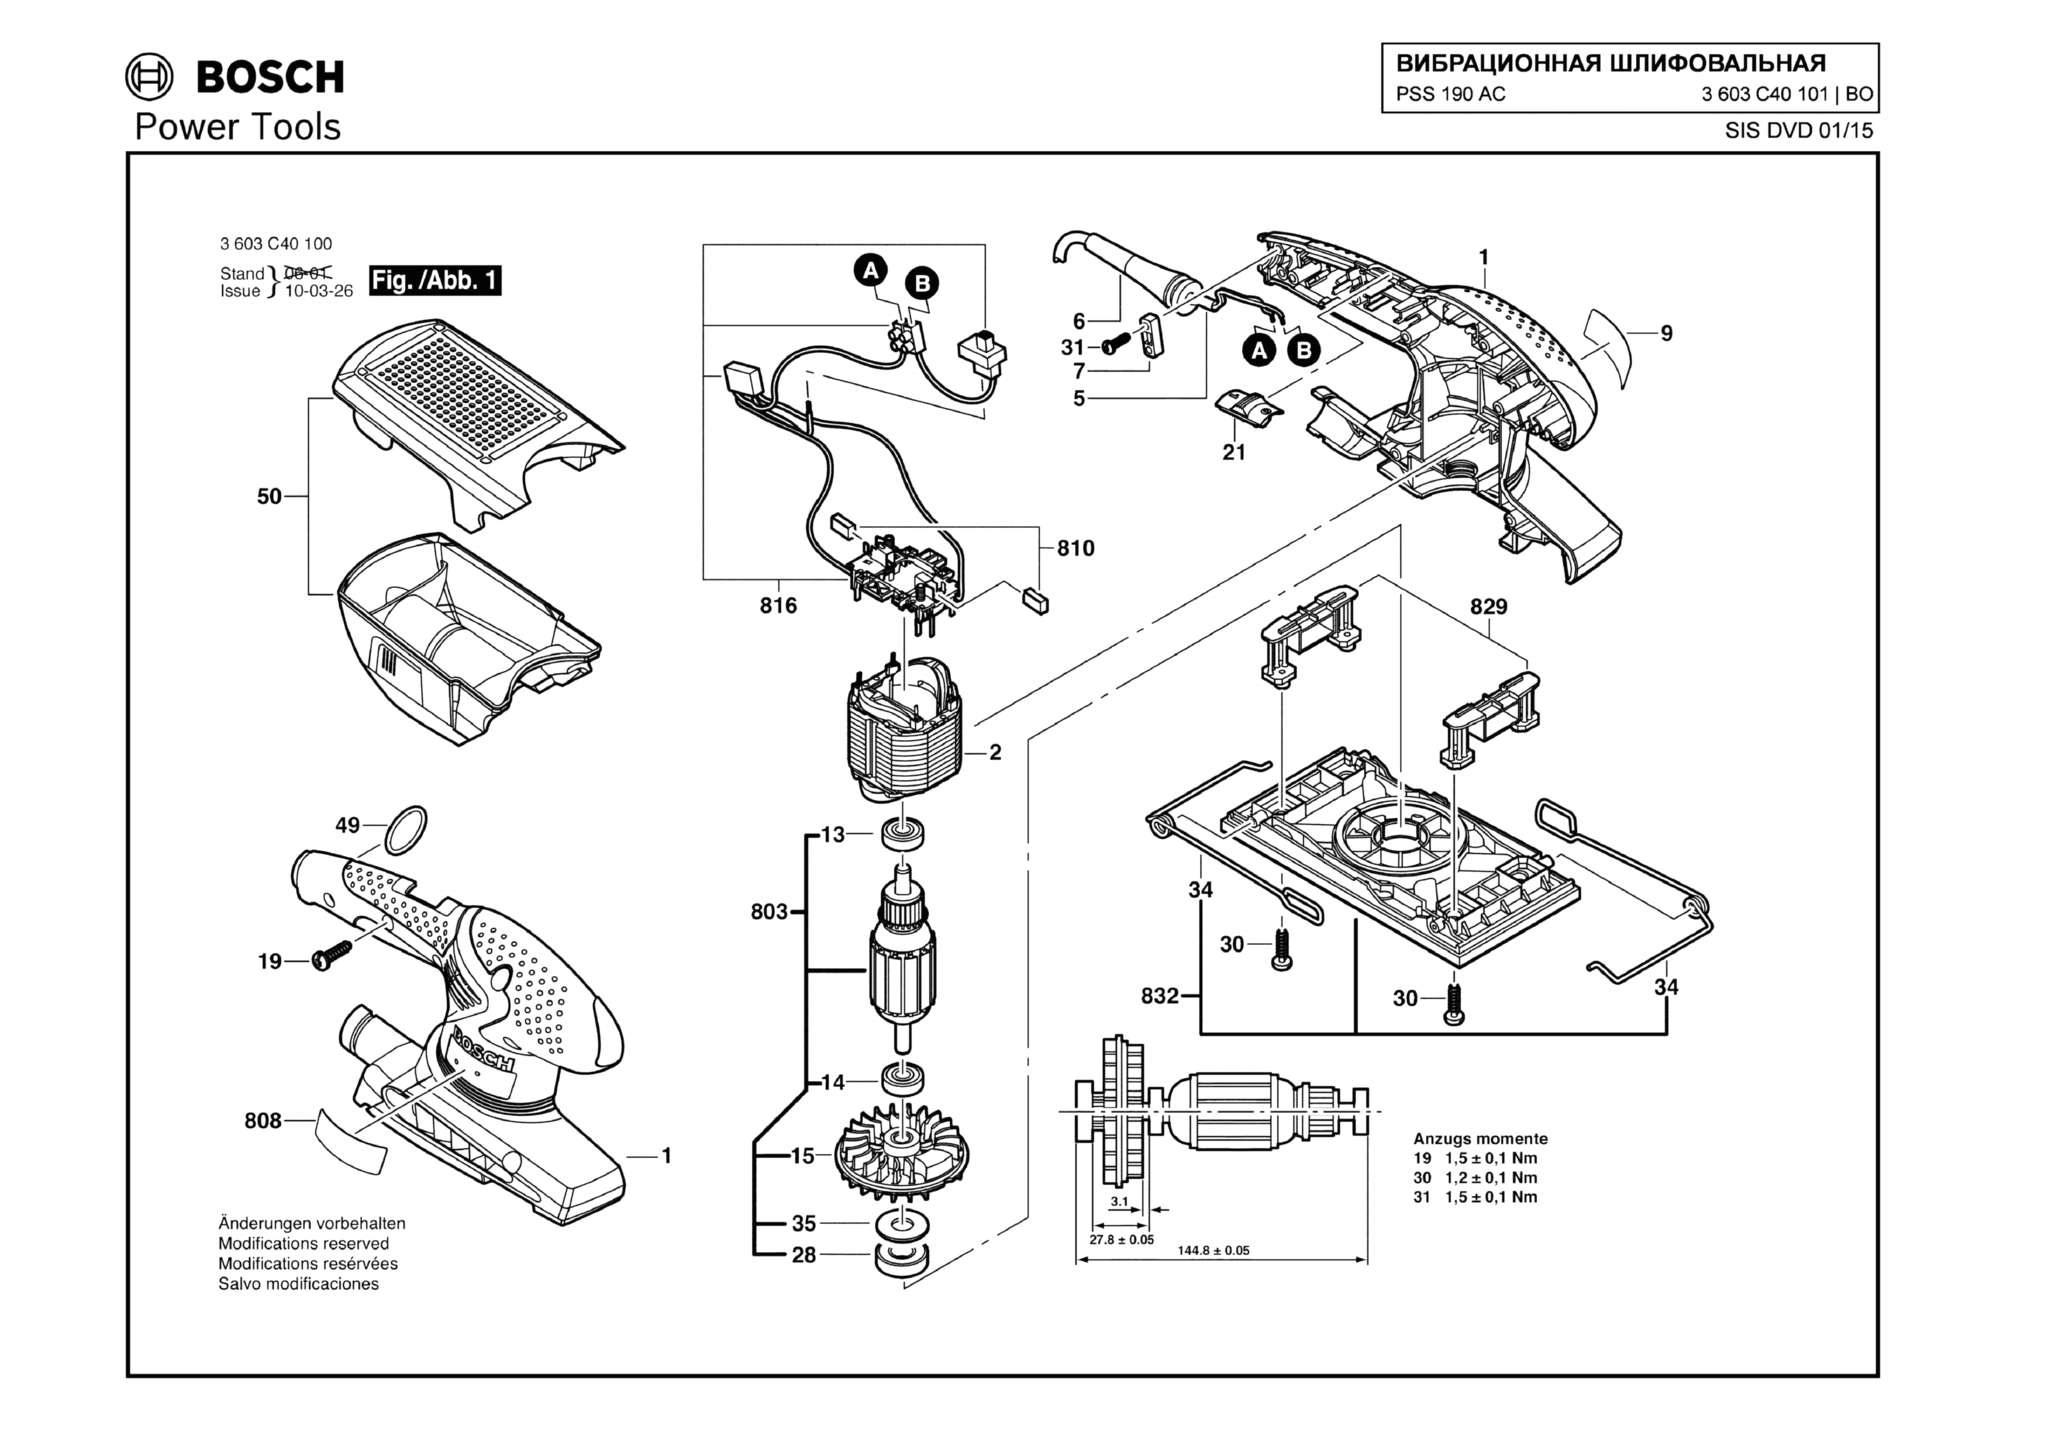 Запчасти, схема и деталировка Bosch PSS 190 AC (ТИП 3603C40101)